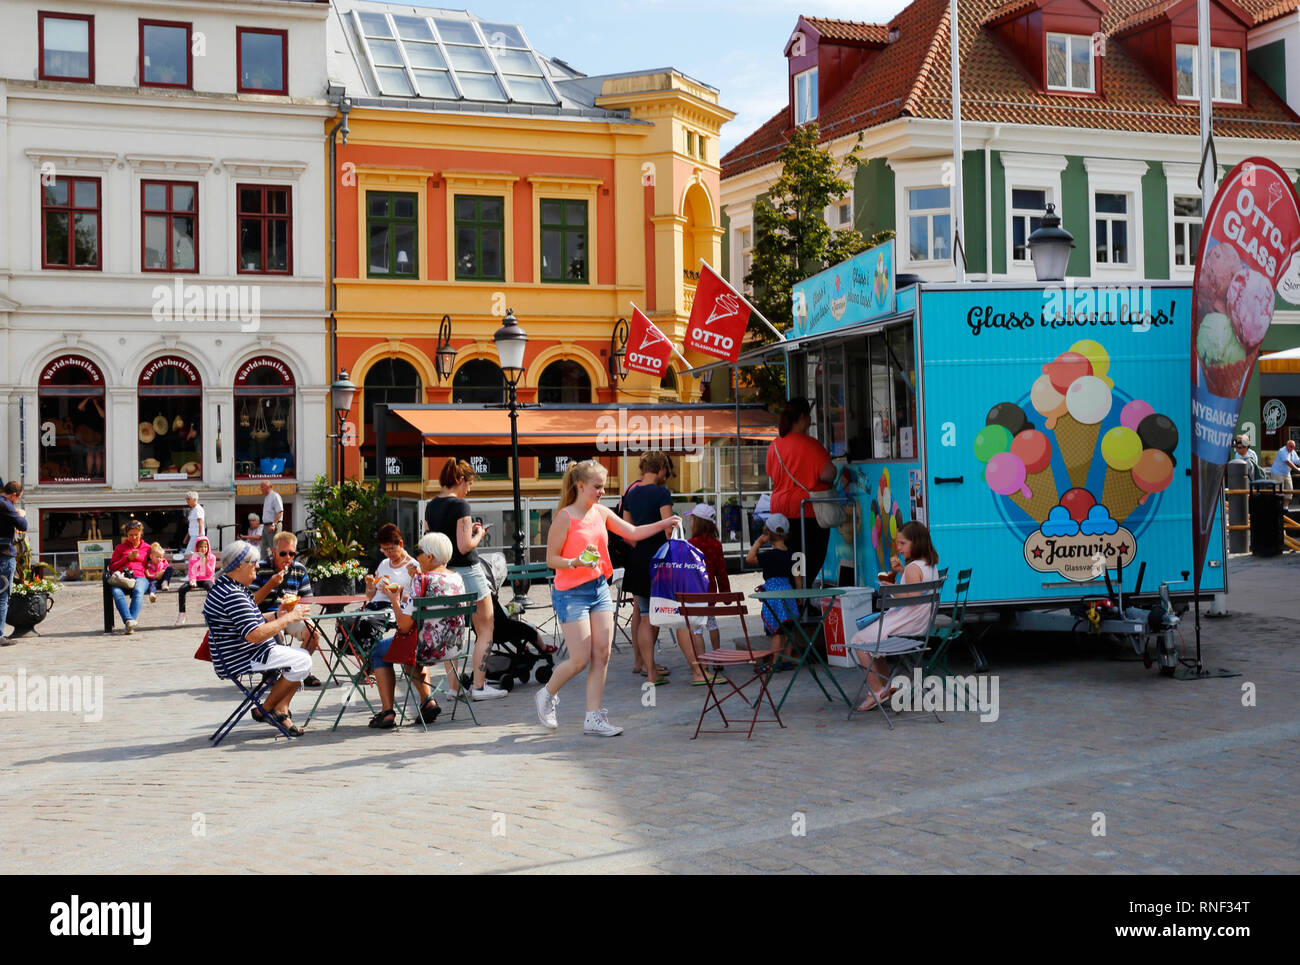 Ystad, Svezia - 26 Giugno 2018: persone che visitano un mobile di gelato chiosco vendita del marchio Ottoglass con posti a sedere all'aperto presso la piazza della città. Foto Stock